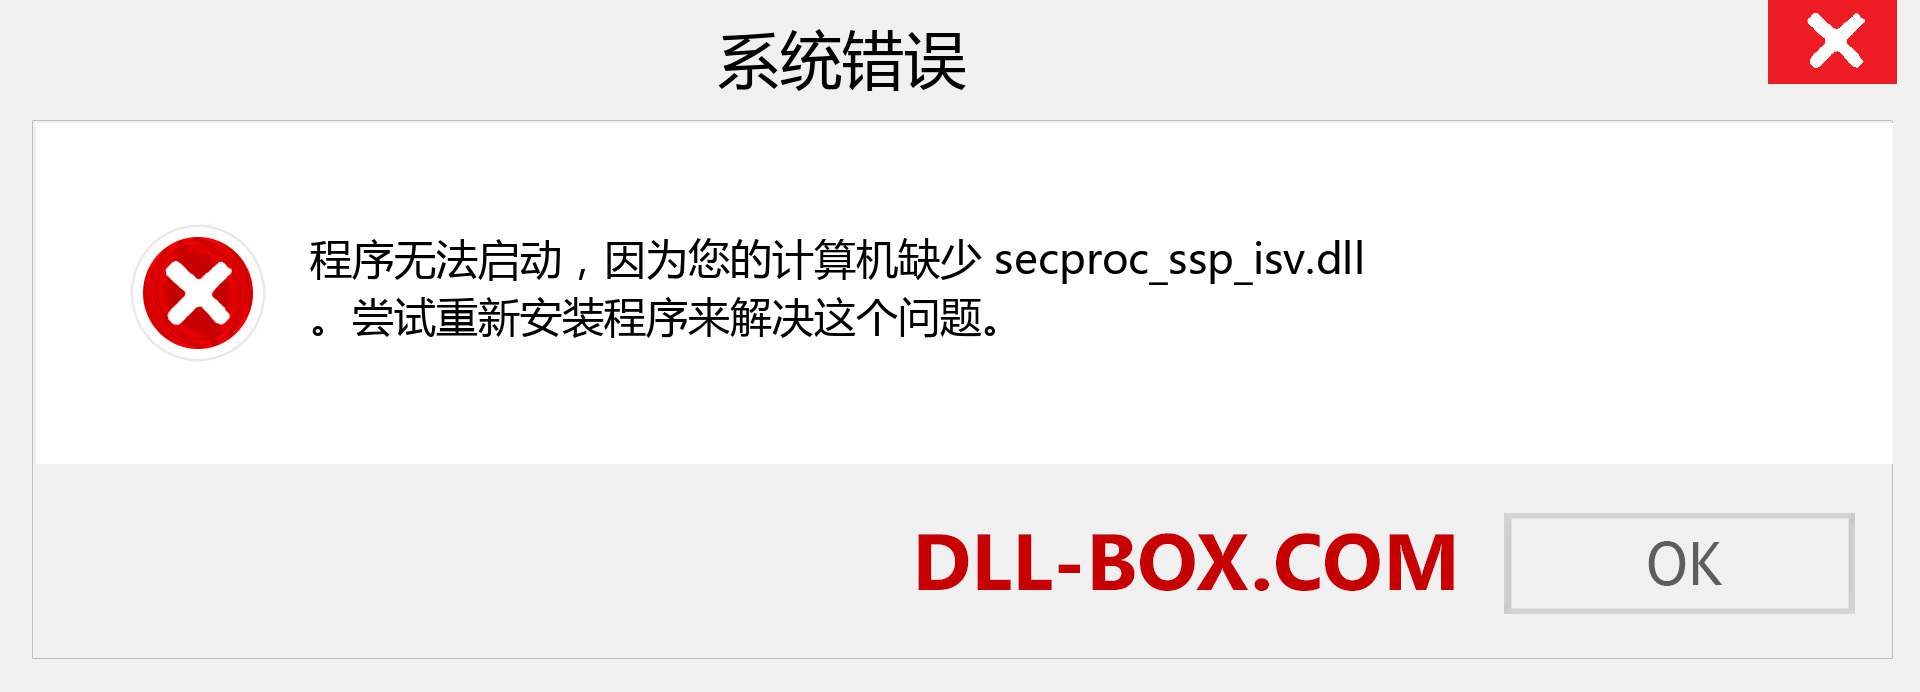 secproc_ssp_isv.dll 文件丢失？。 适用于 Windows 7、8、10 的下载 - 修复 Windows、照片、图像上的 secproc_ssp_isv dll 丢失错误